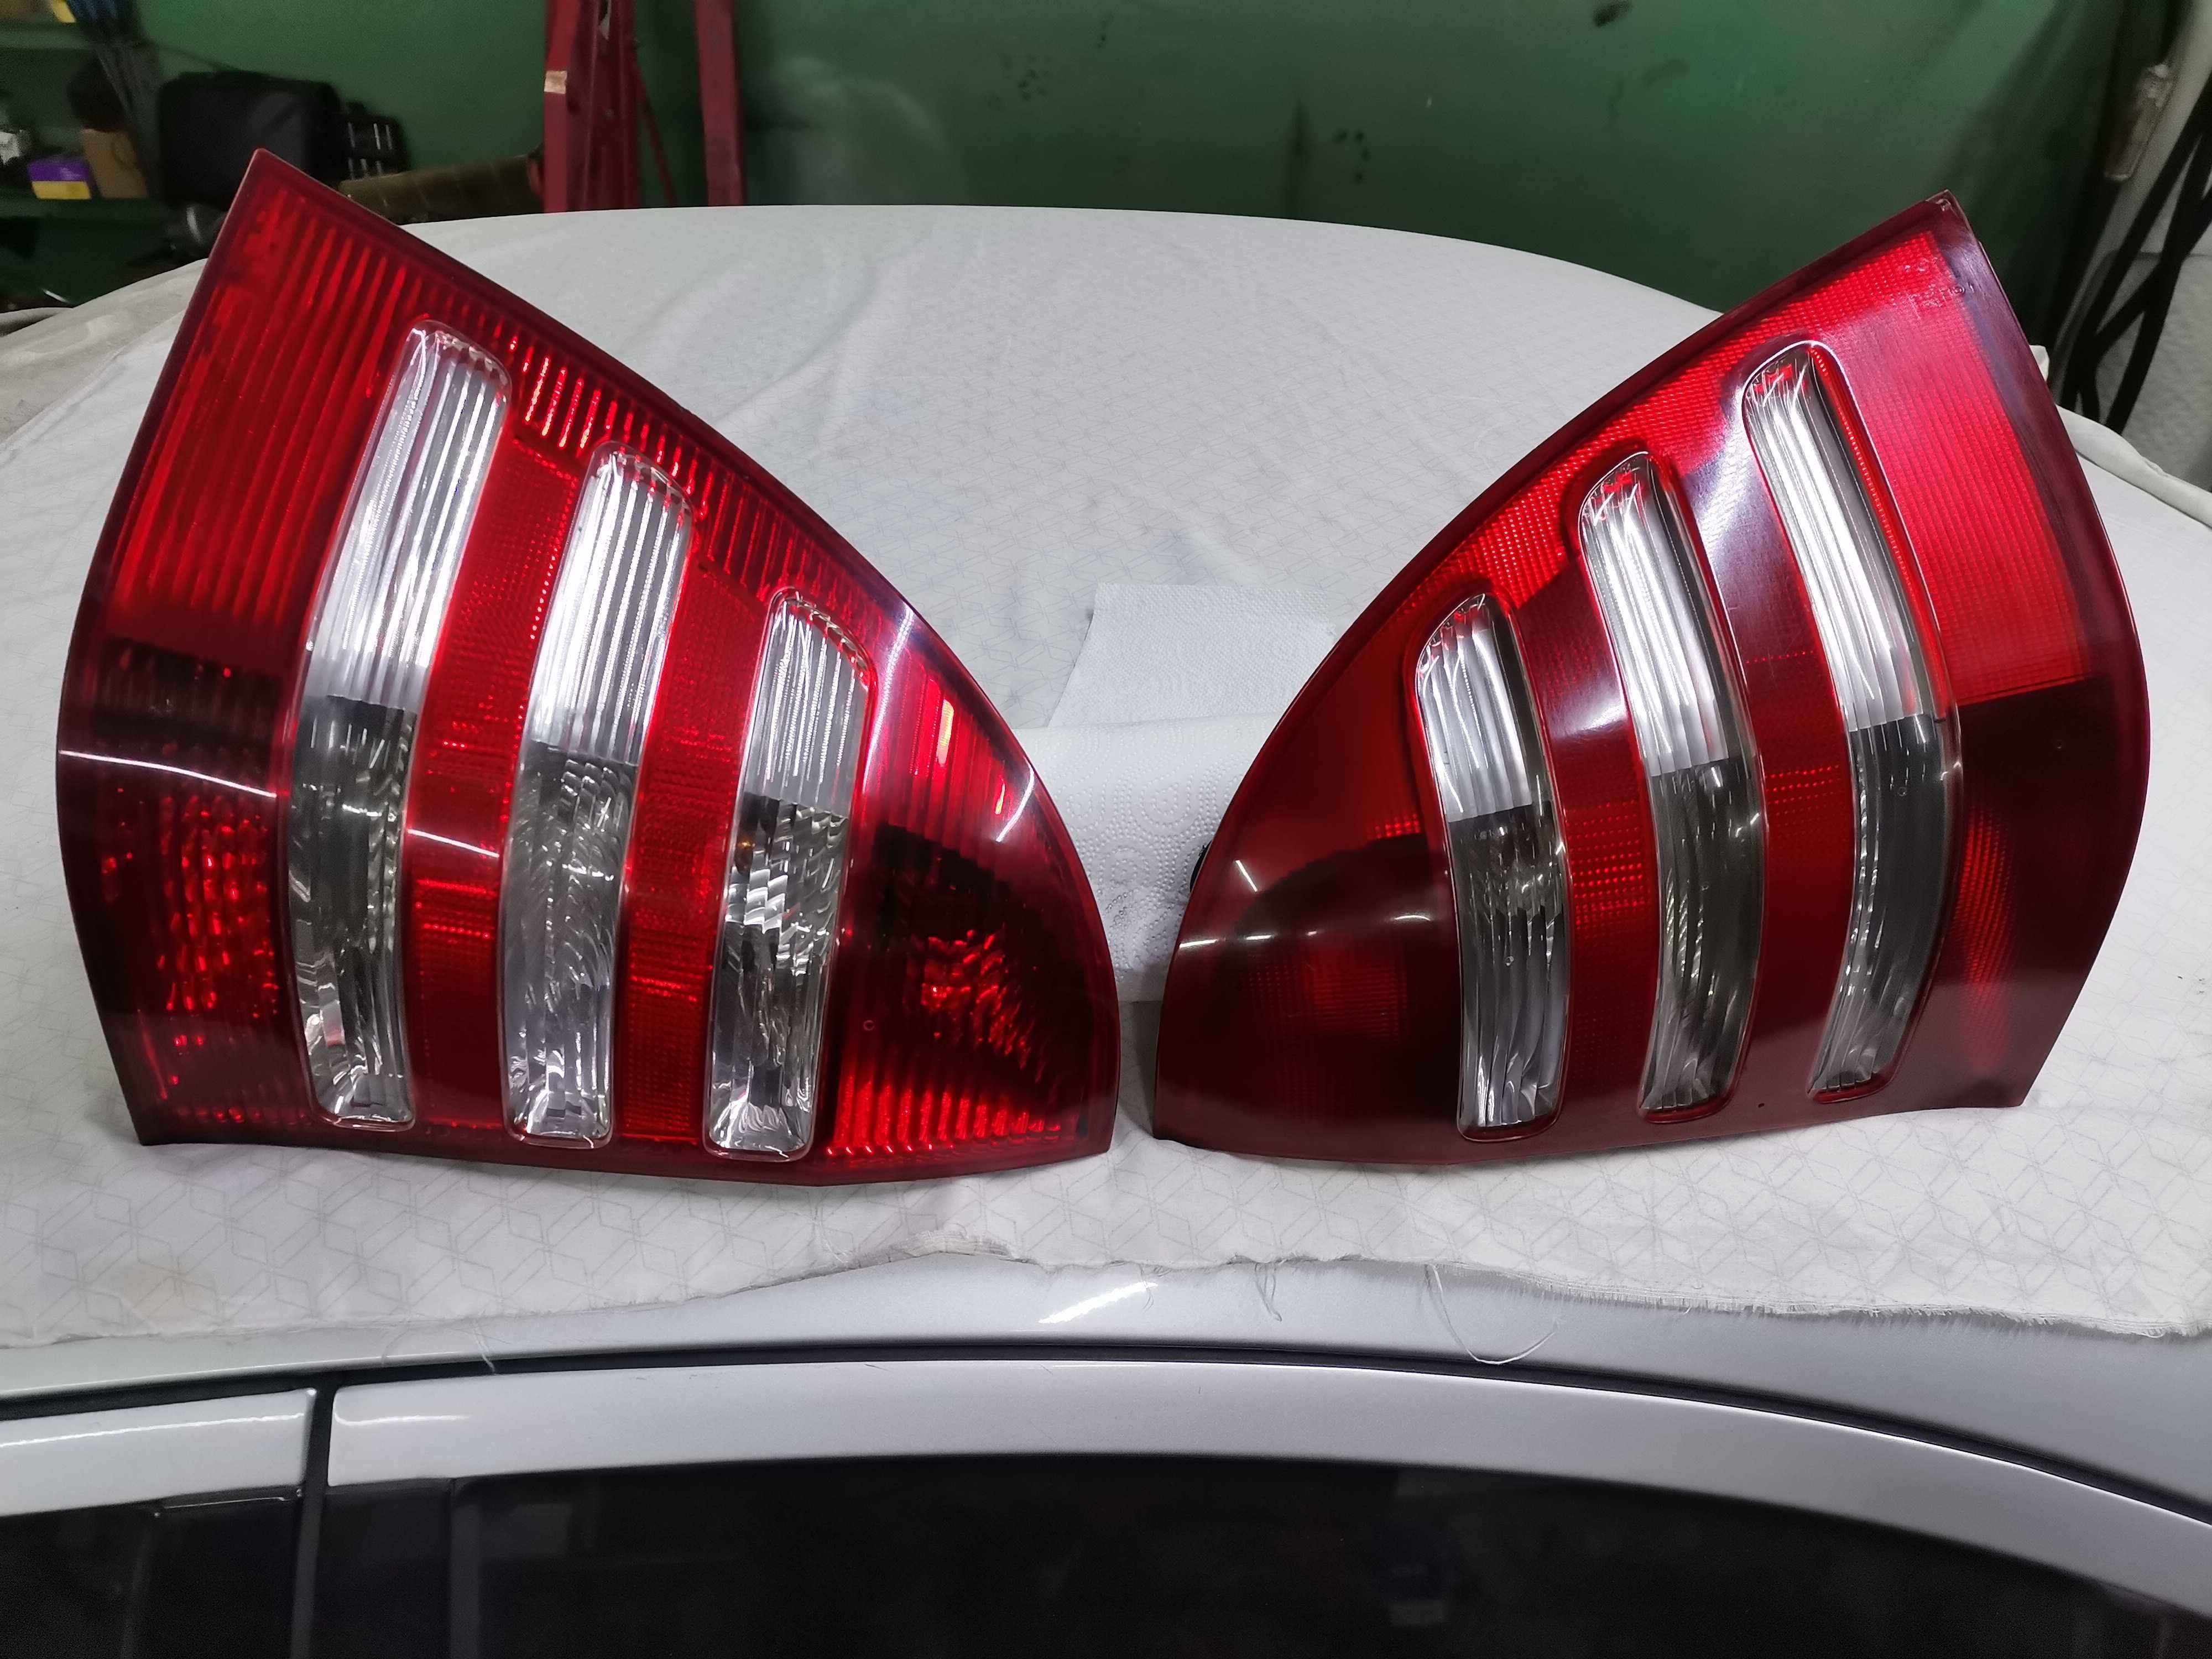 Lampy Przód/Tył Różne Marki Mercedes Audi Vw Skoda Ford Peugeot i inne